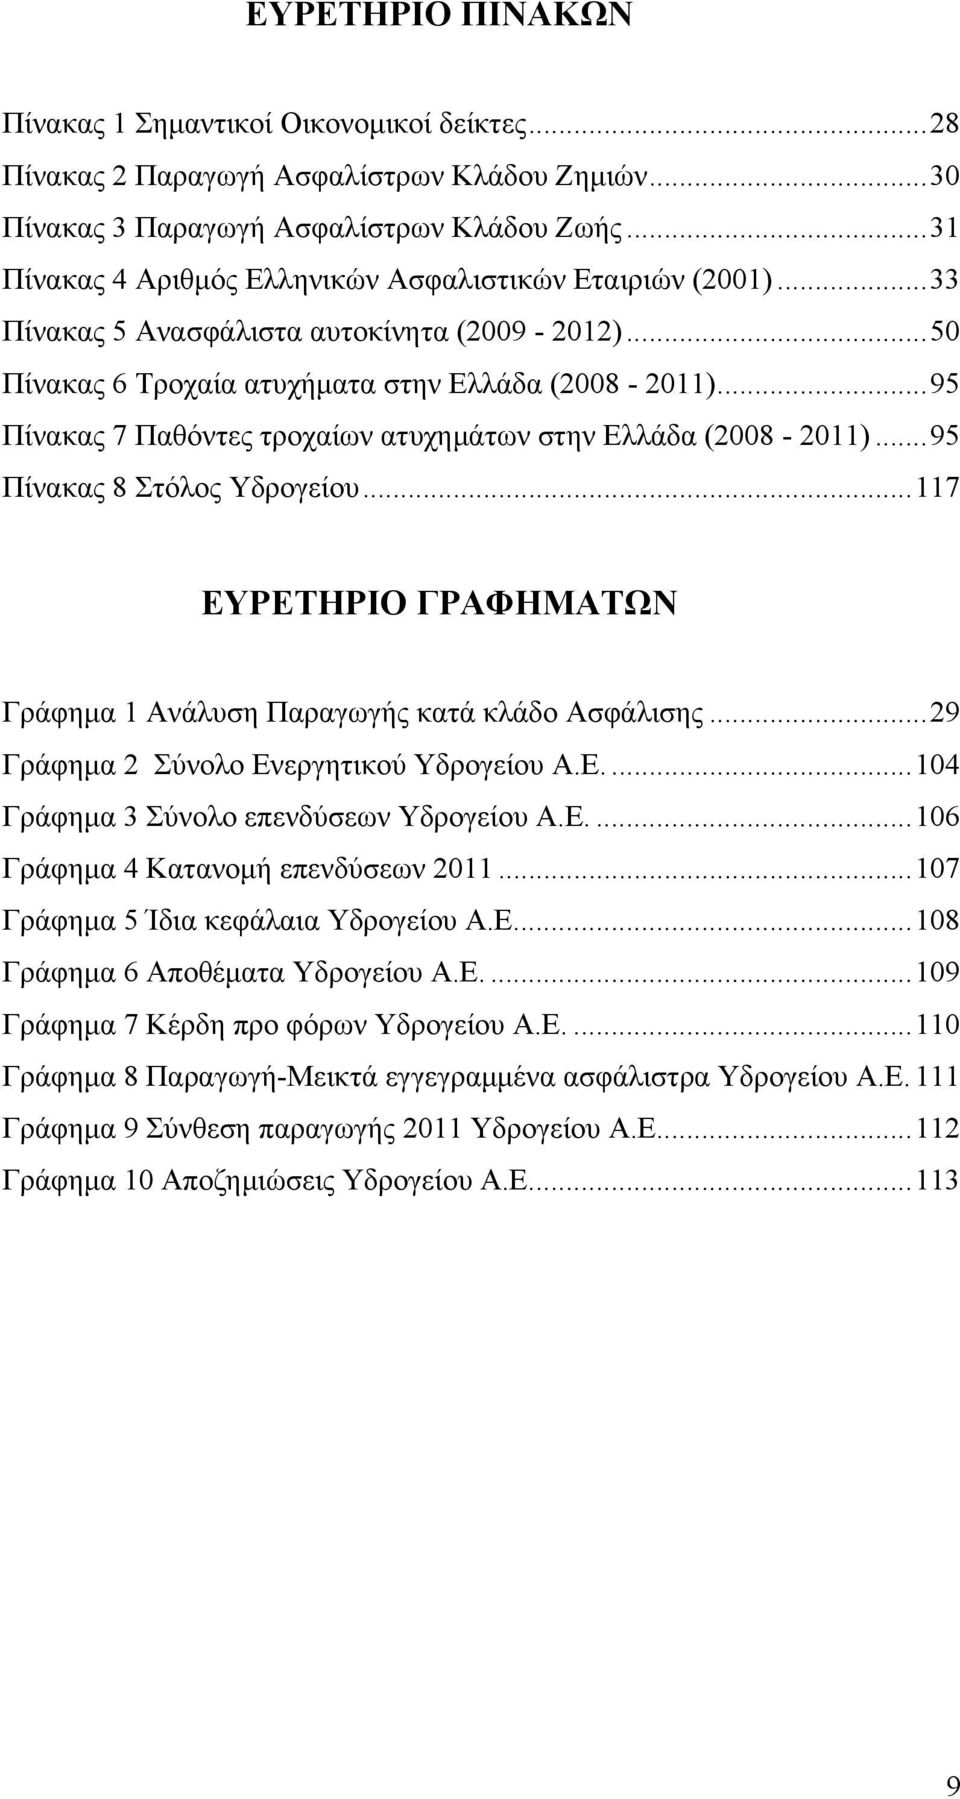 .. 95 Πίνακας 7 Παθόντες τροχαίων ατυχημάτων στην Ελλάδα (2008-2011)... 95 Πίνακας 8 Στόλος Υδρογείου... 117 ΕΥΡΕΤΗΡΙΟ ΓΡΑΦΗΜΑΤΩΝ Γράφημα 1 Ανάλυση Παραγωγής κατά κλάδο Ασφάλισης.